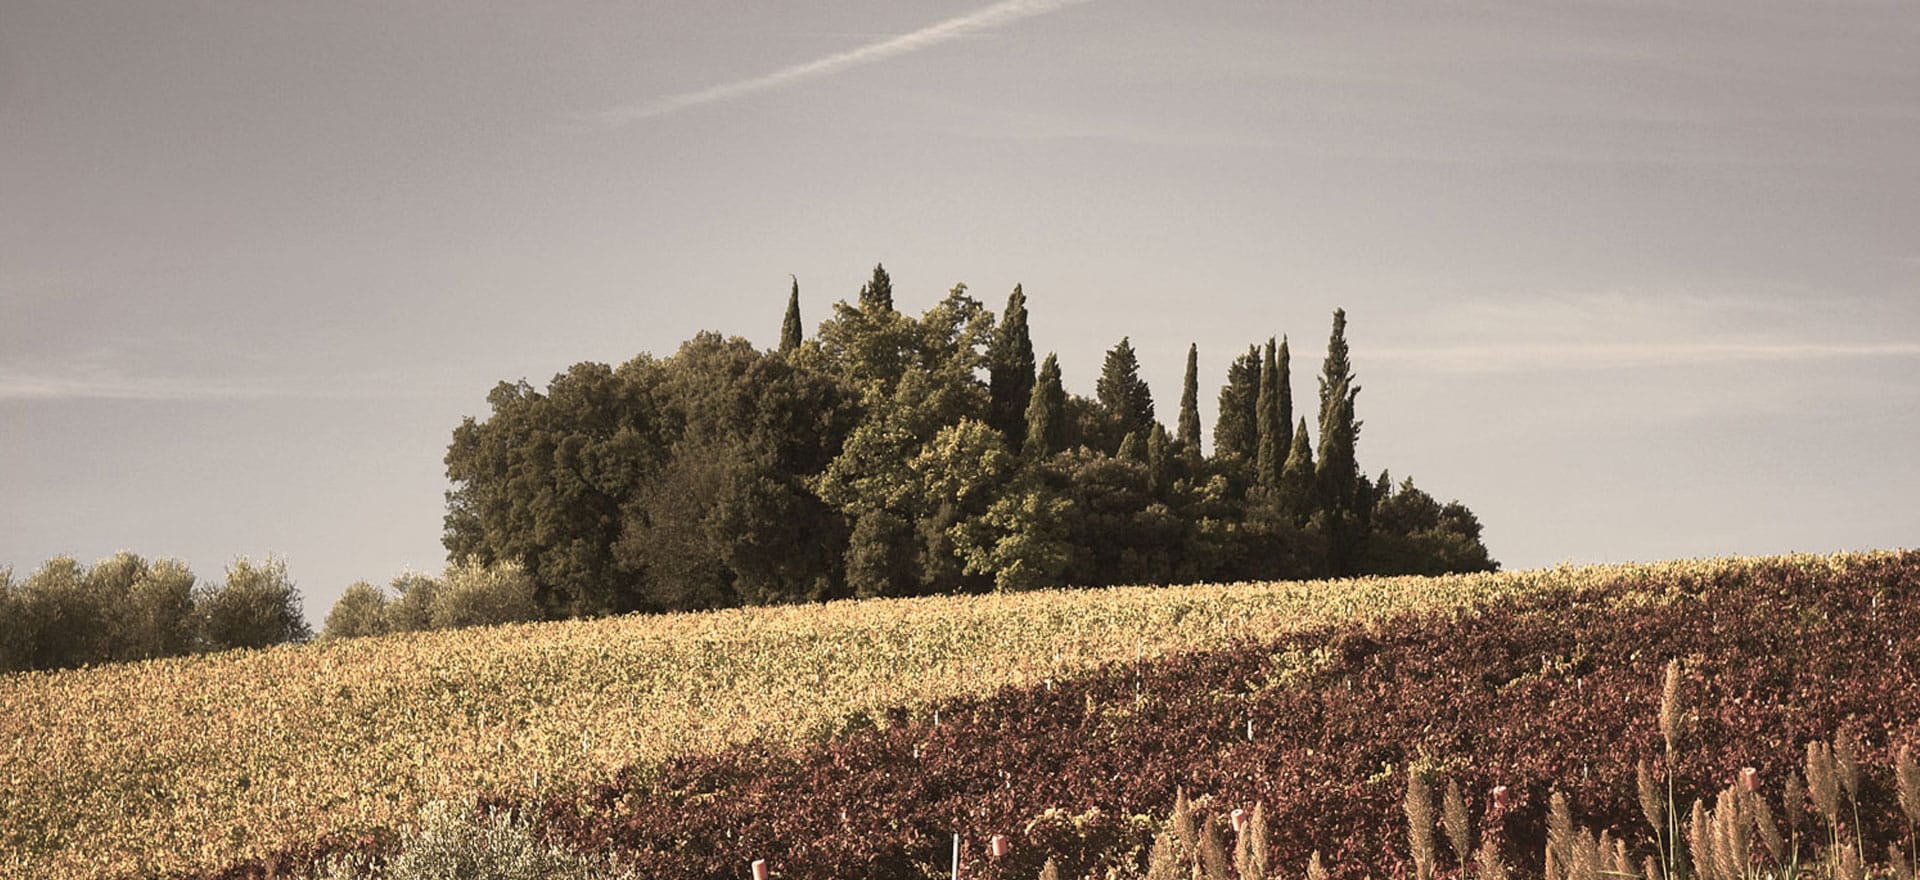 Piandaccoli Winery – the soul of Tuscany